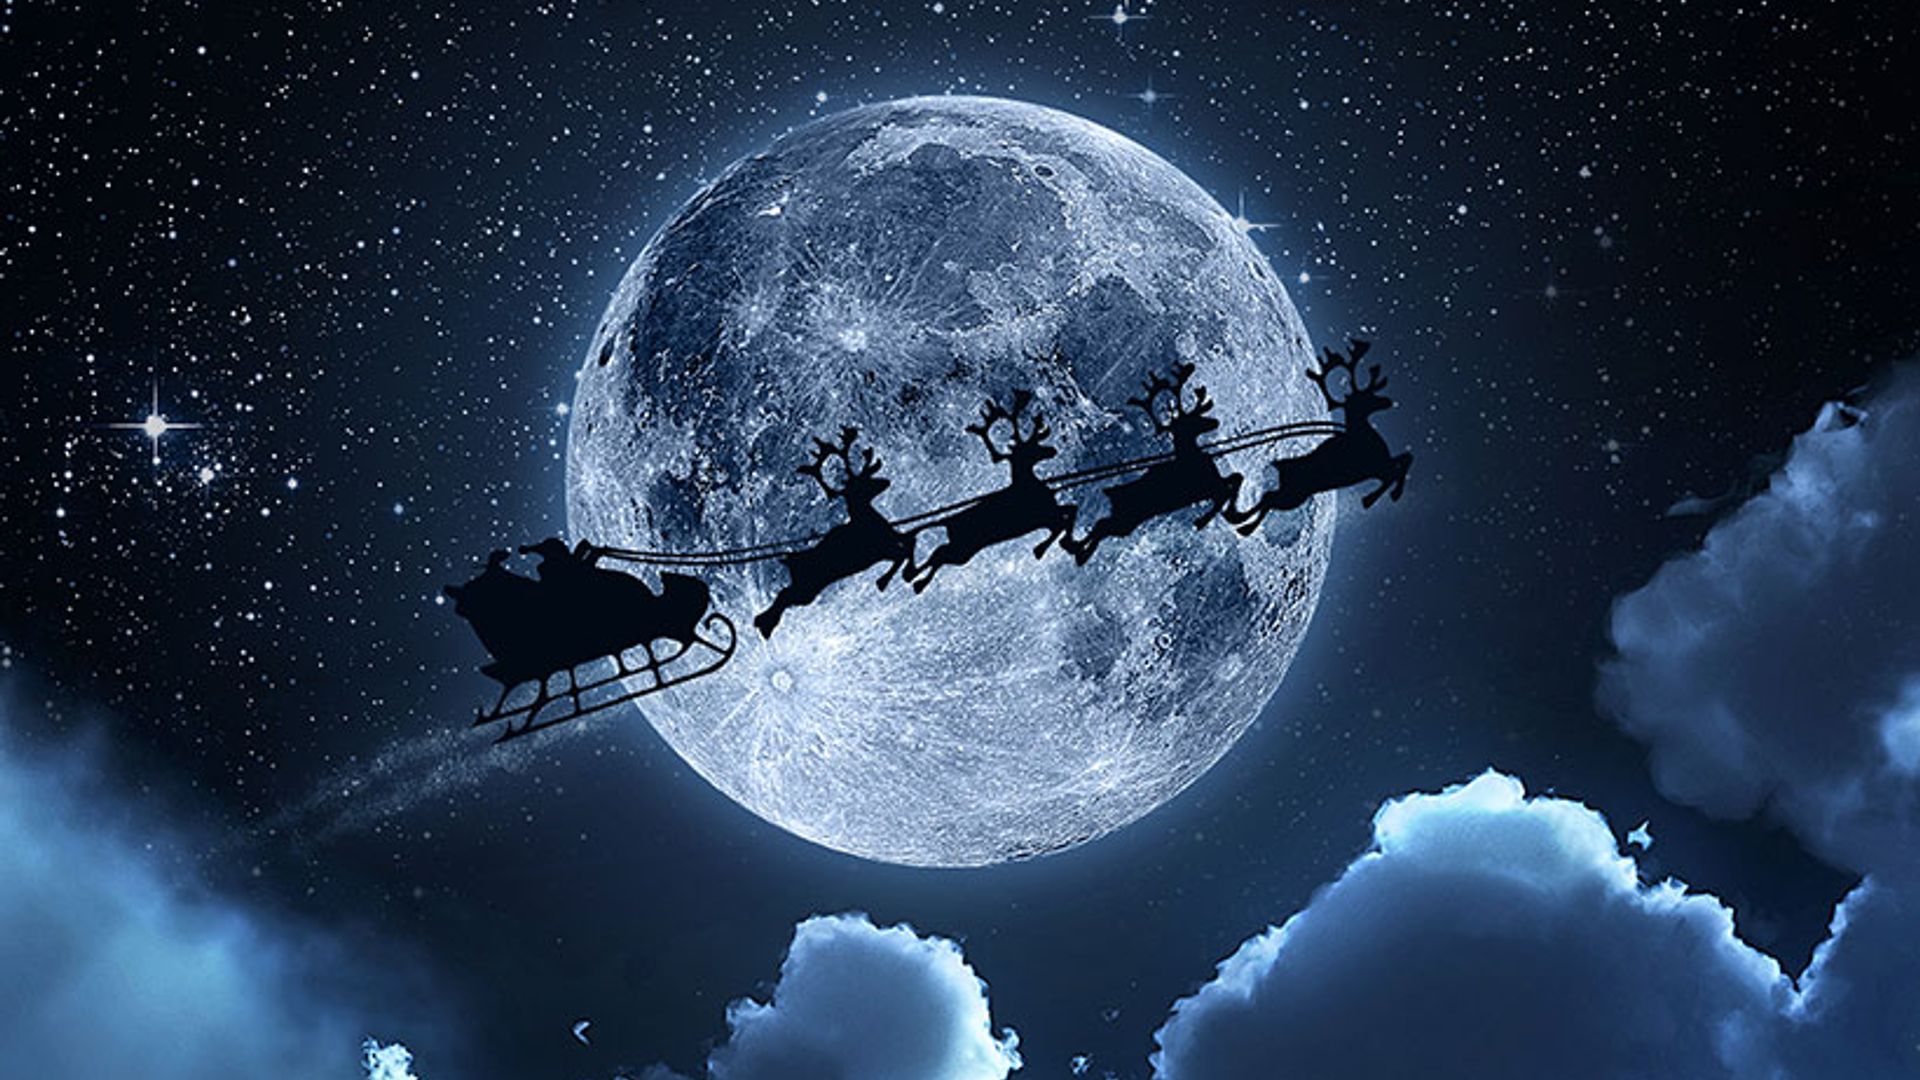 santa sleigh zoom background